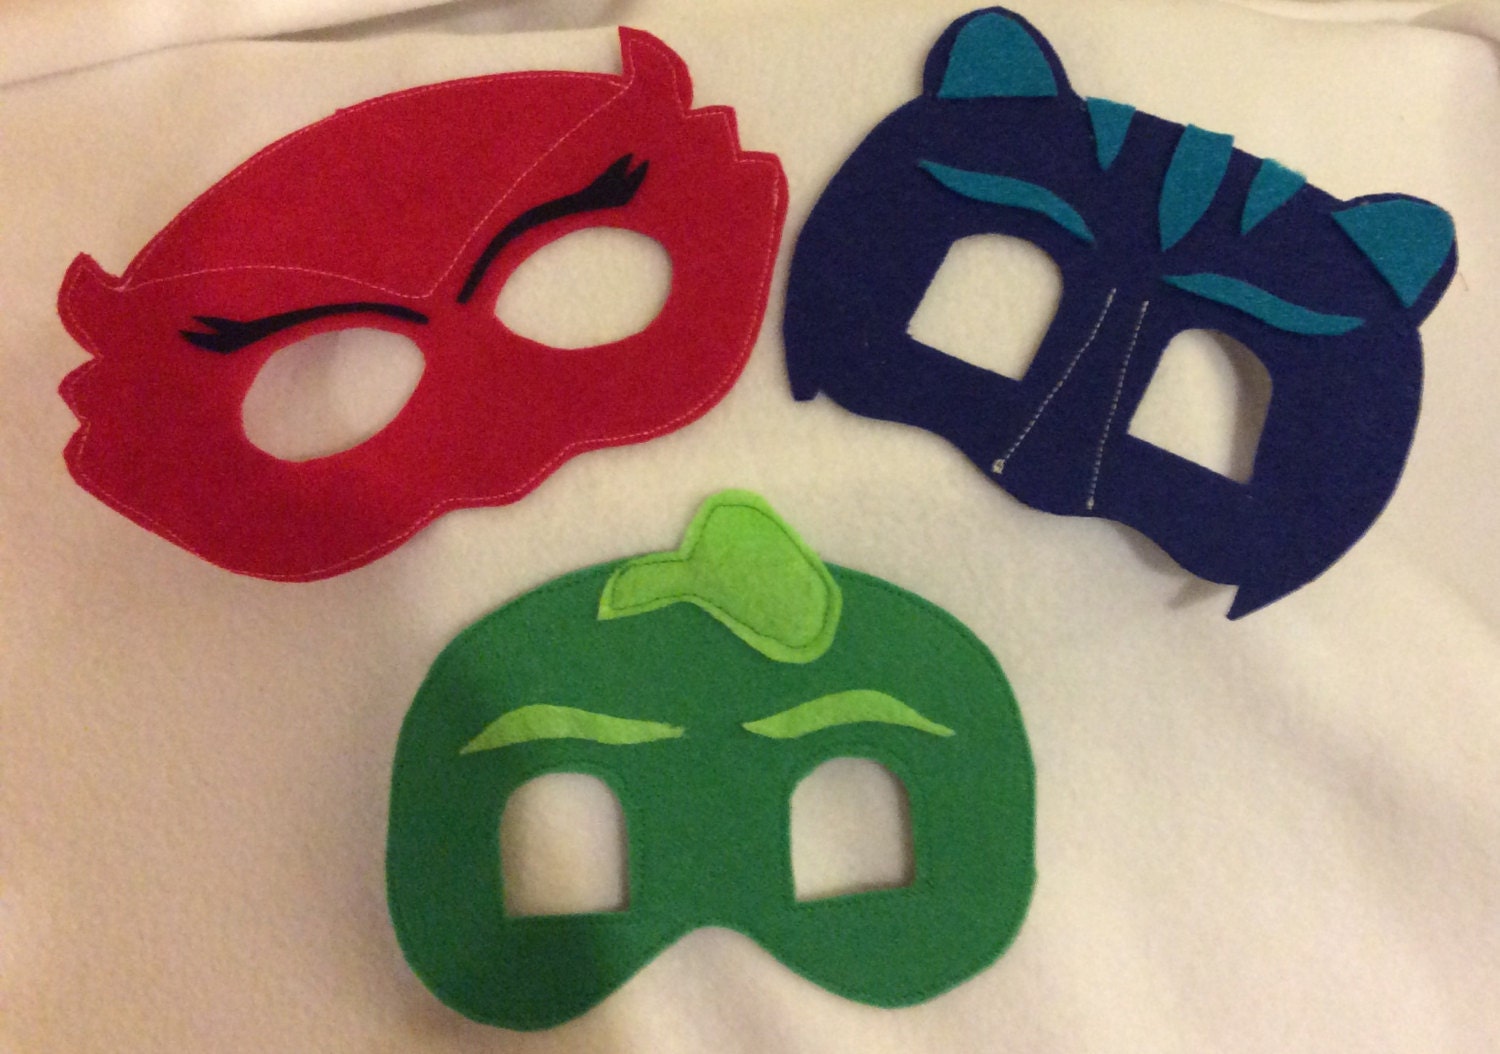 PJ masks superhero masks party masks